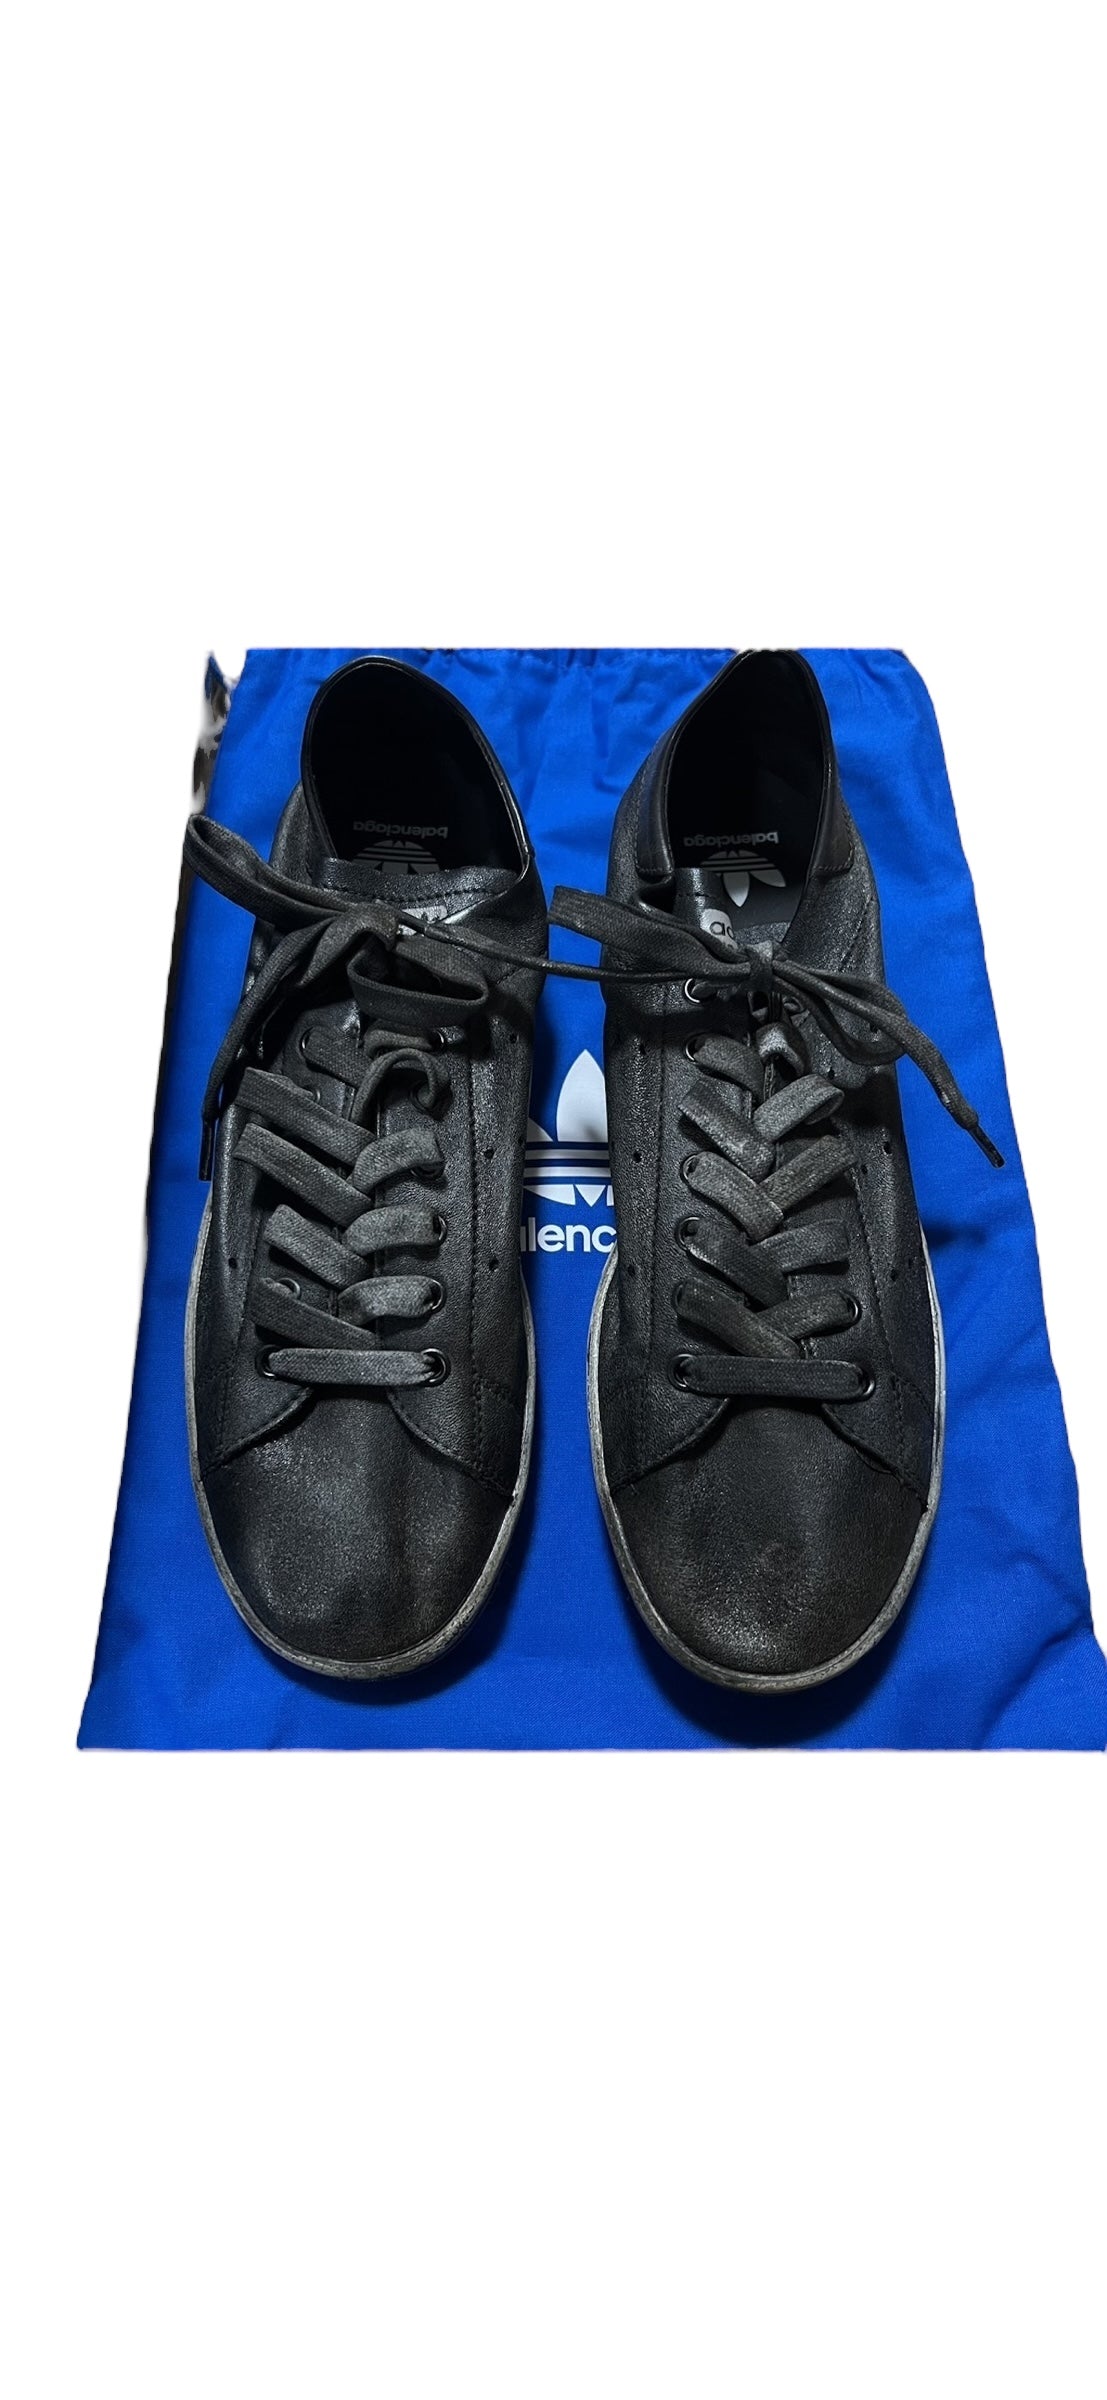 Balenciaga x Adidas Worn Out Leather Stan Smith